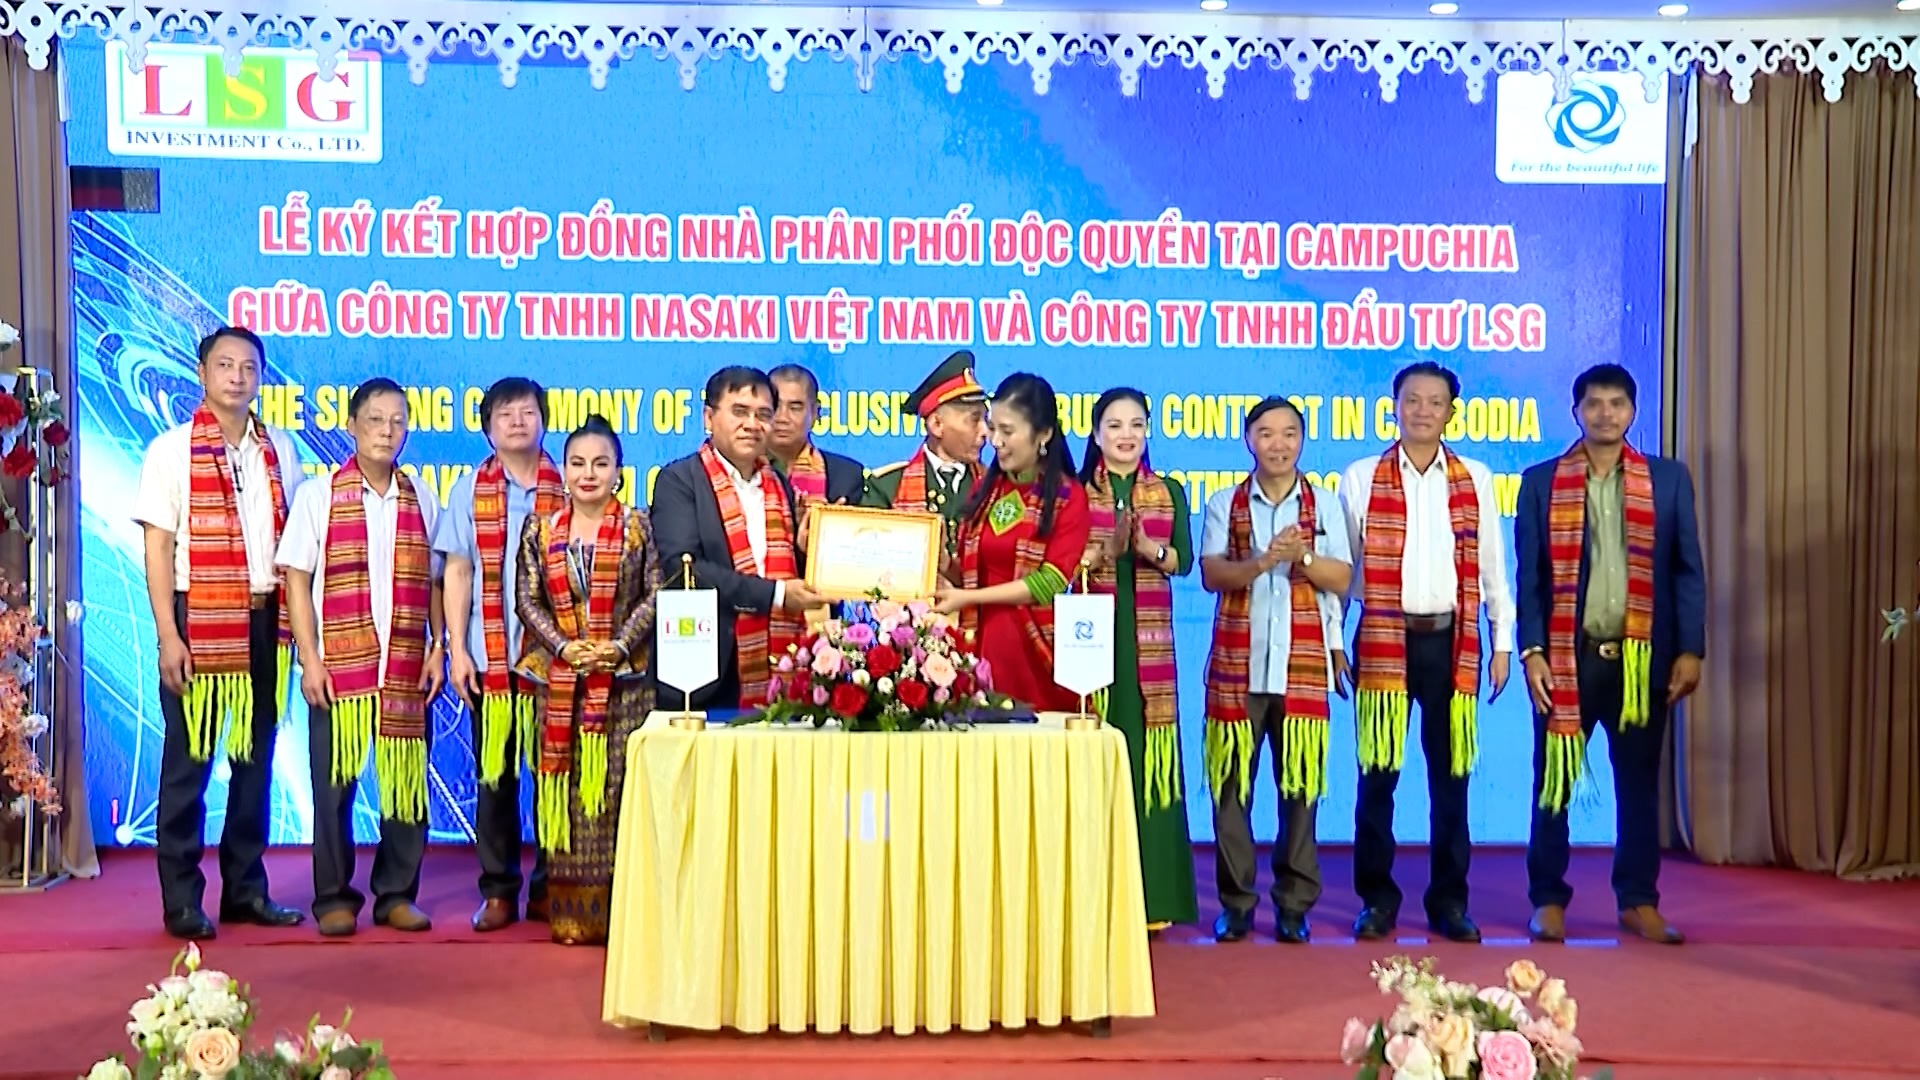 Công ty TNHH Nasaki Việt Nam ký kết hợp đồng nhà phân phối độc quyền tại Campuchia